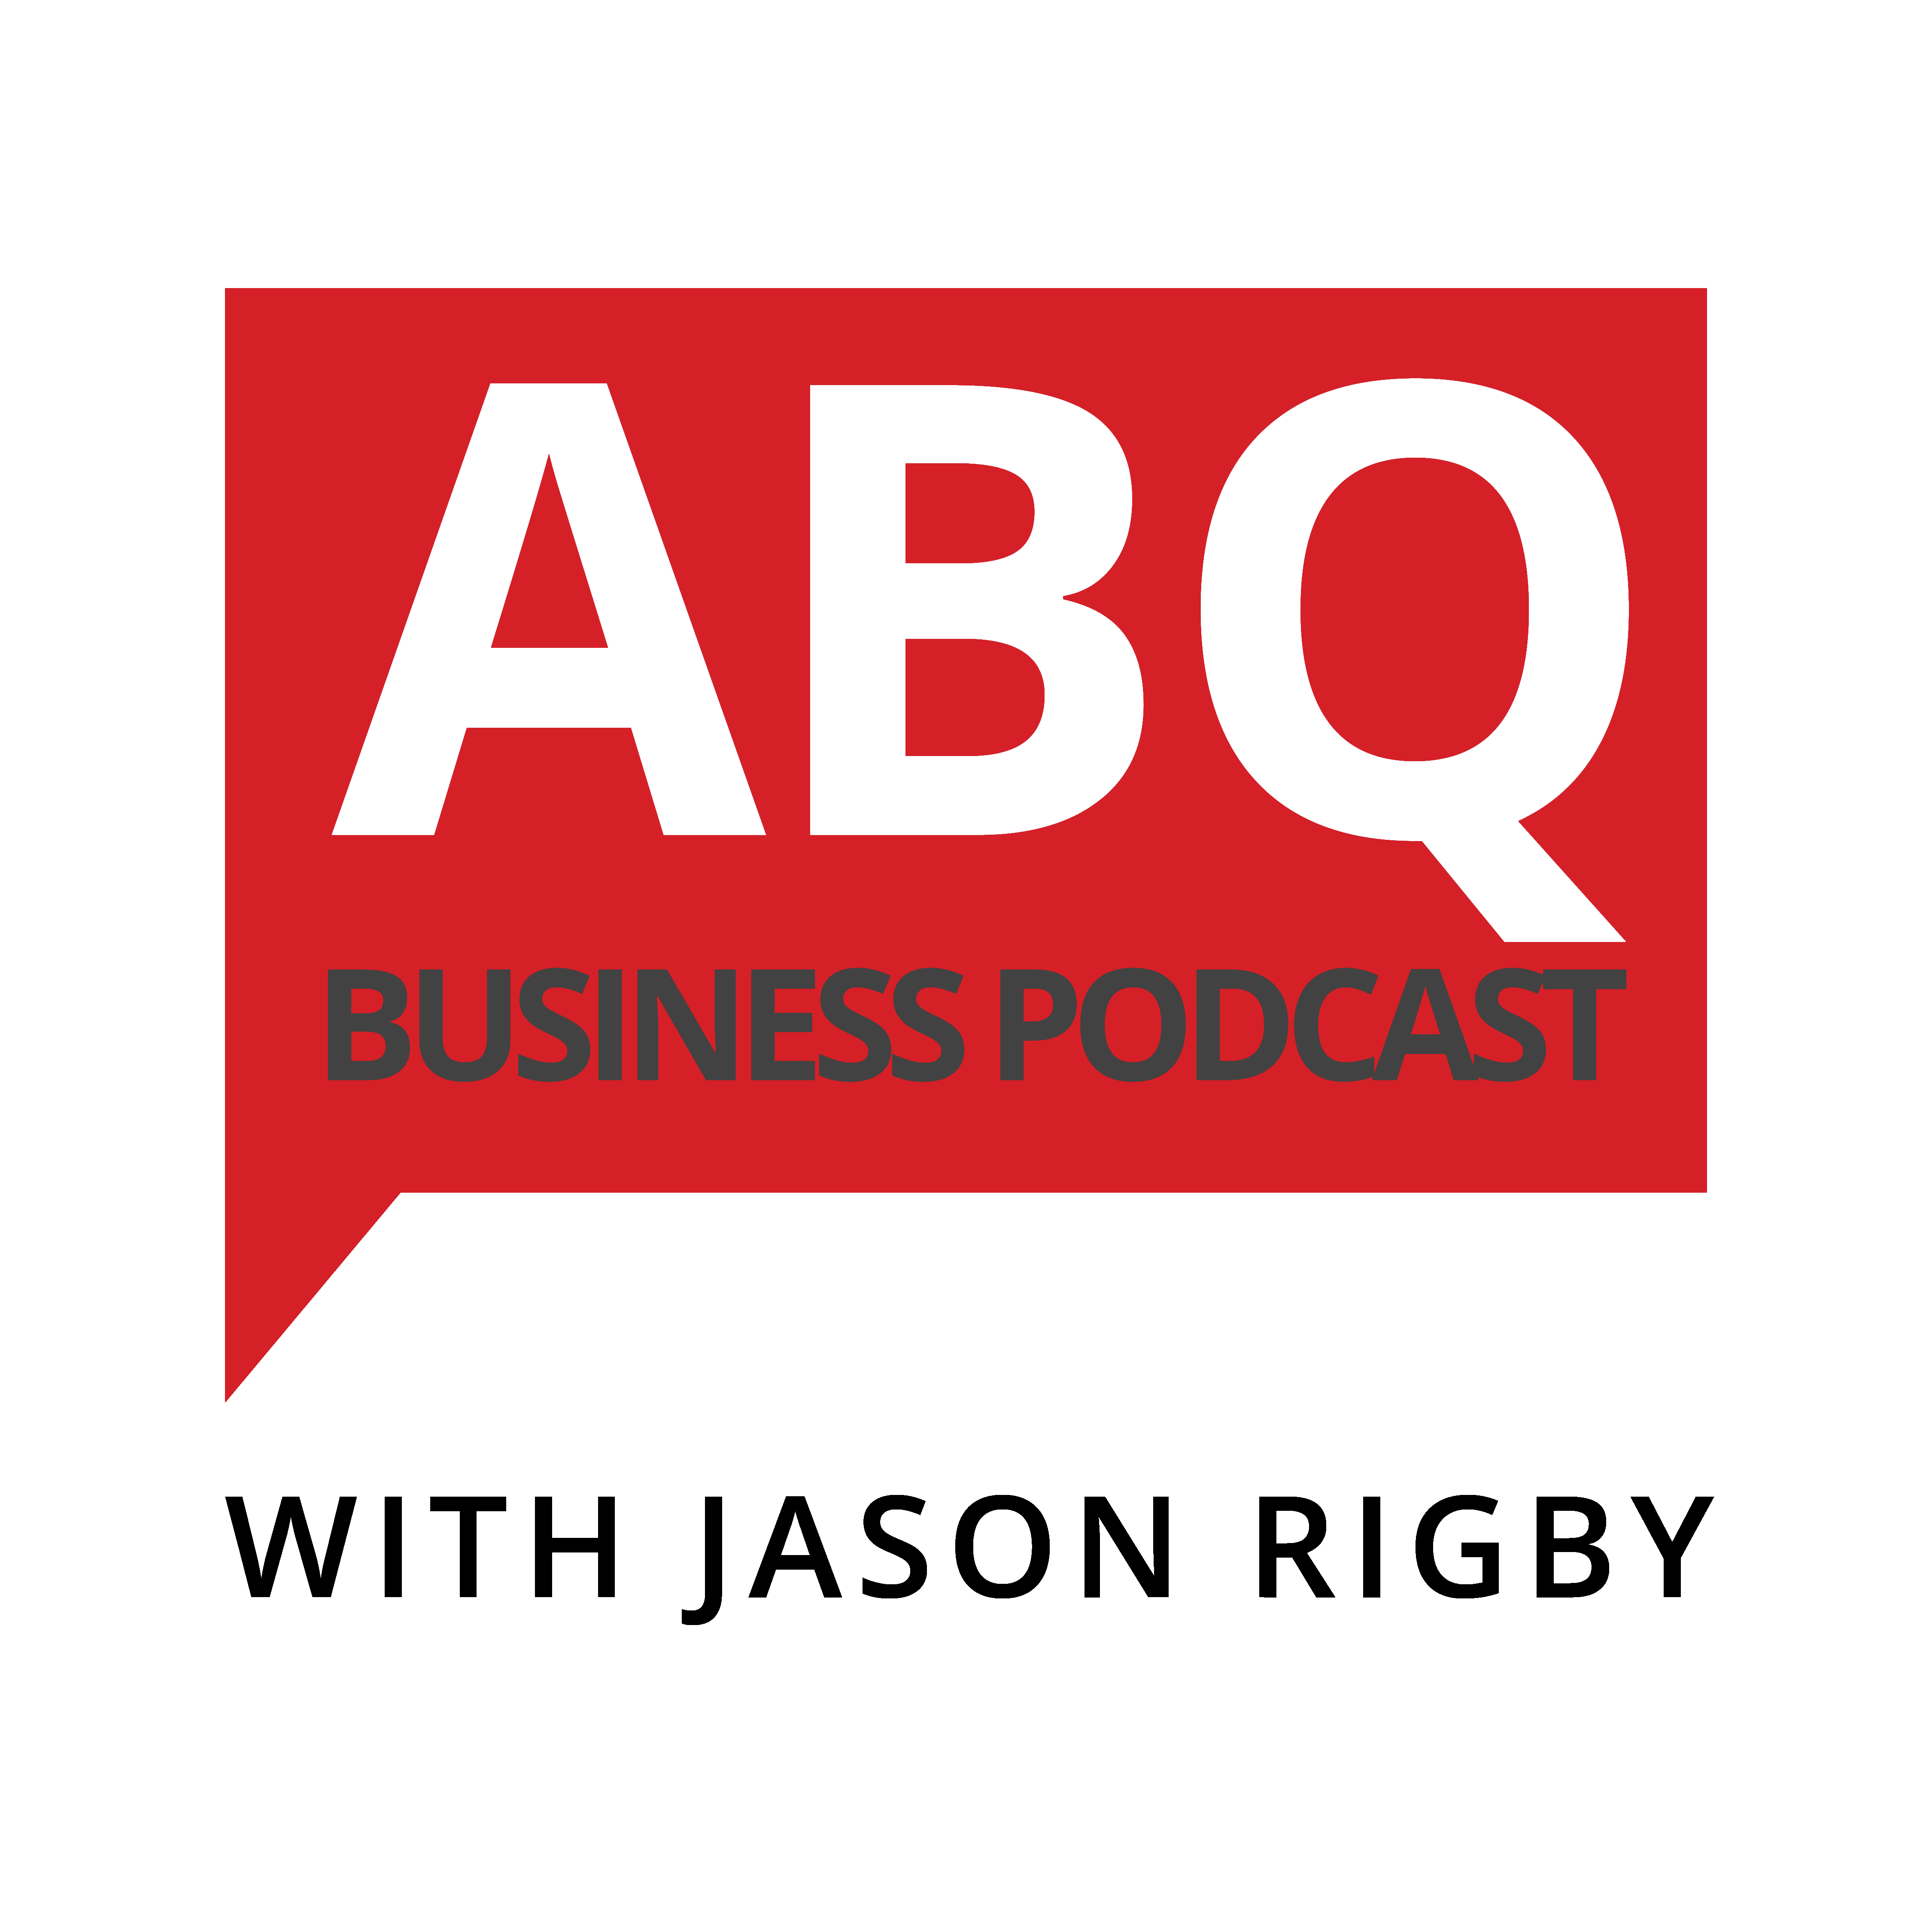 abq albuquerque business podcast jason rigby quality mazda cars